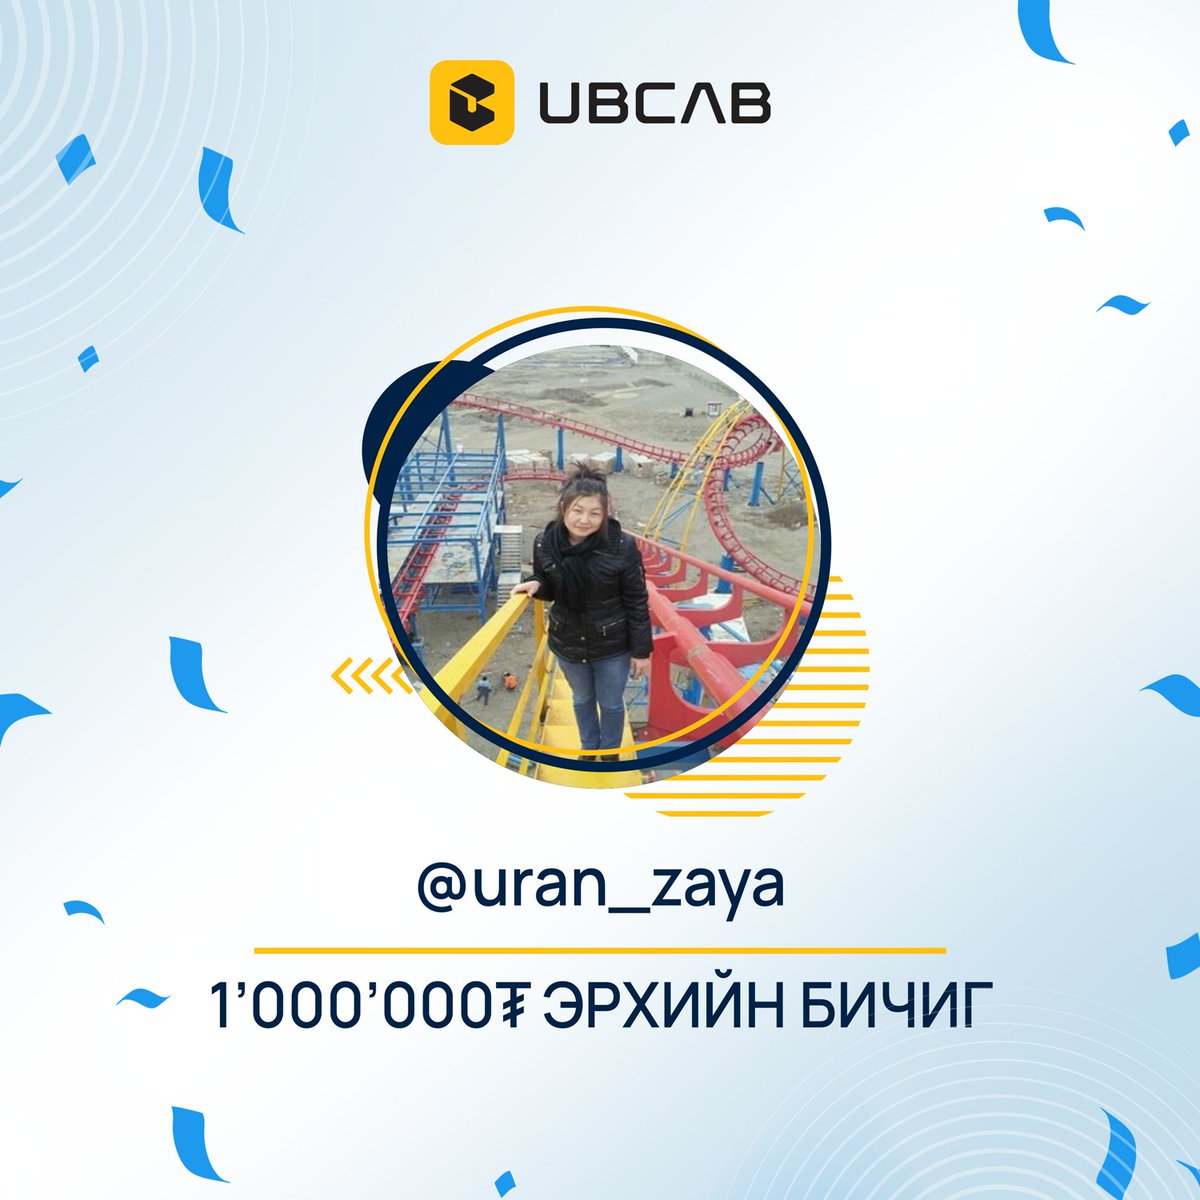 UBCab Giveaway post -ийн азтан болж 1'000'000₮-ийн бэлгийн карт хожсон @uran_zaya танд баяр хүргэе.